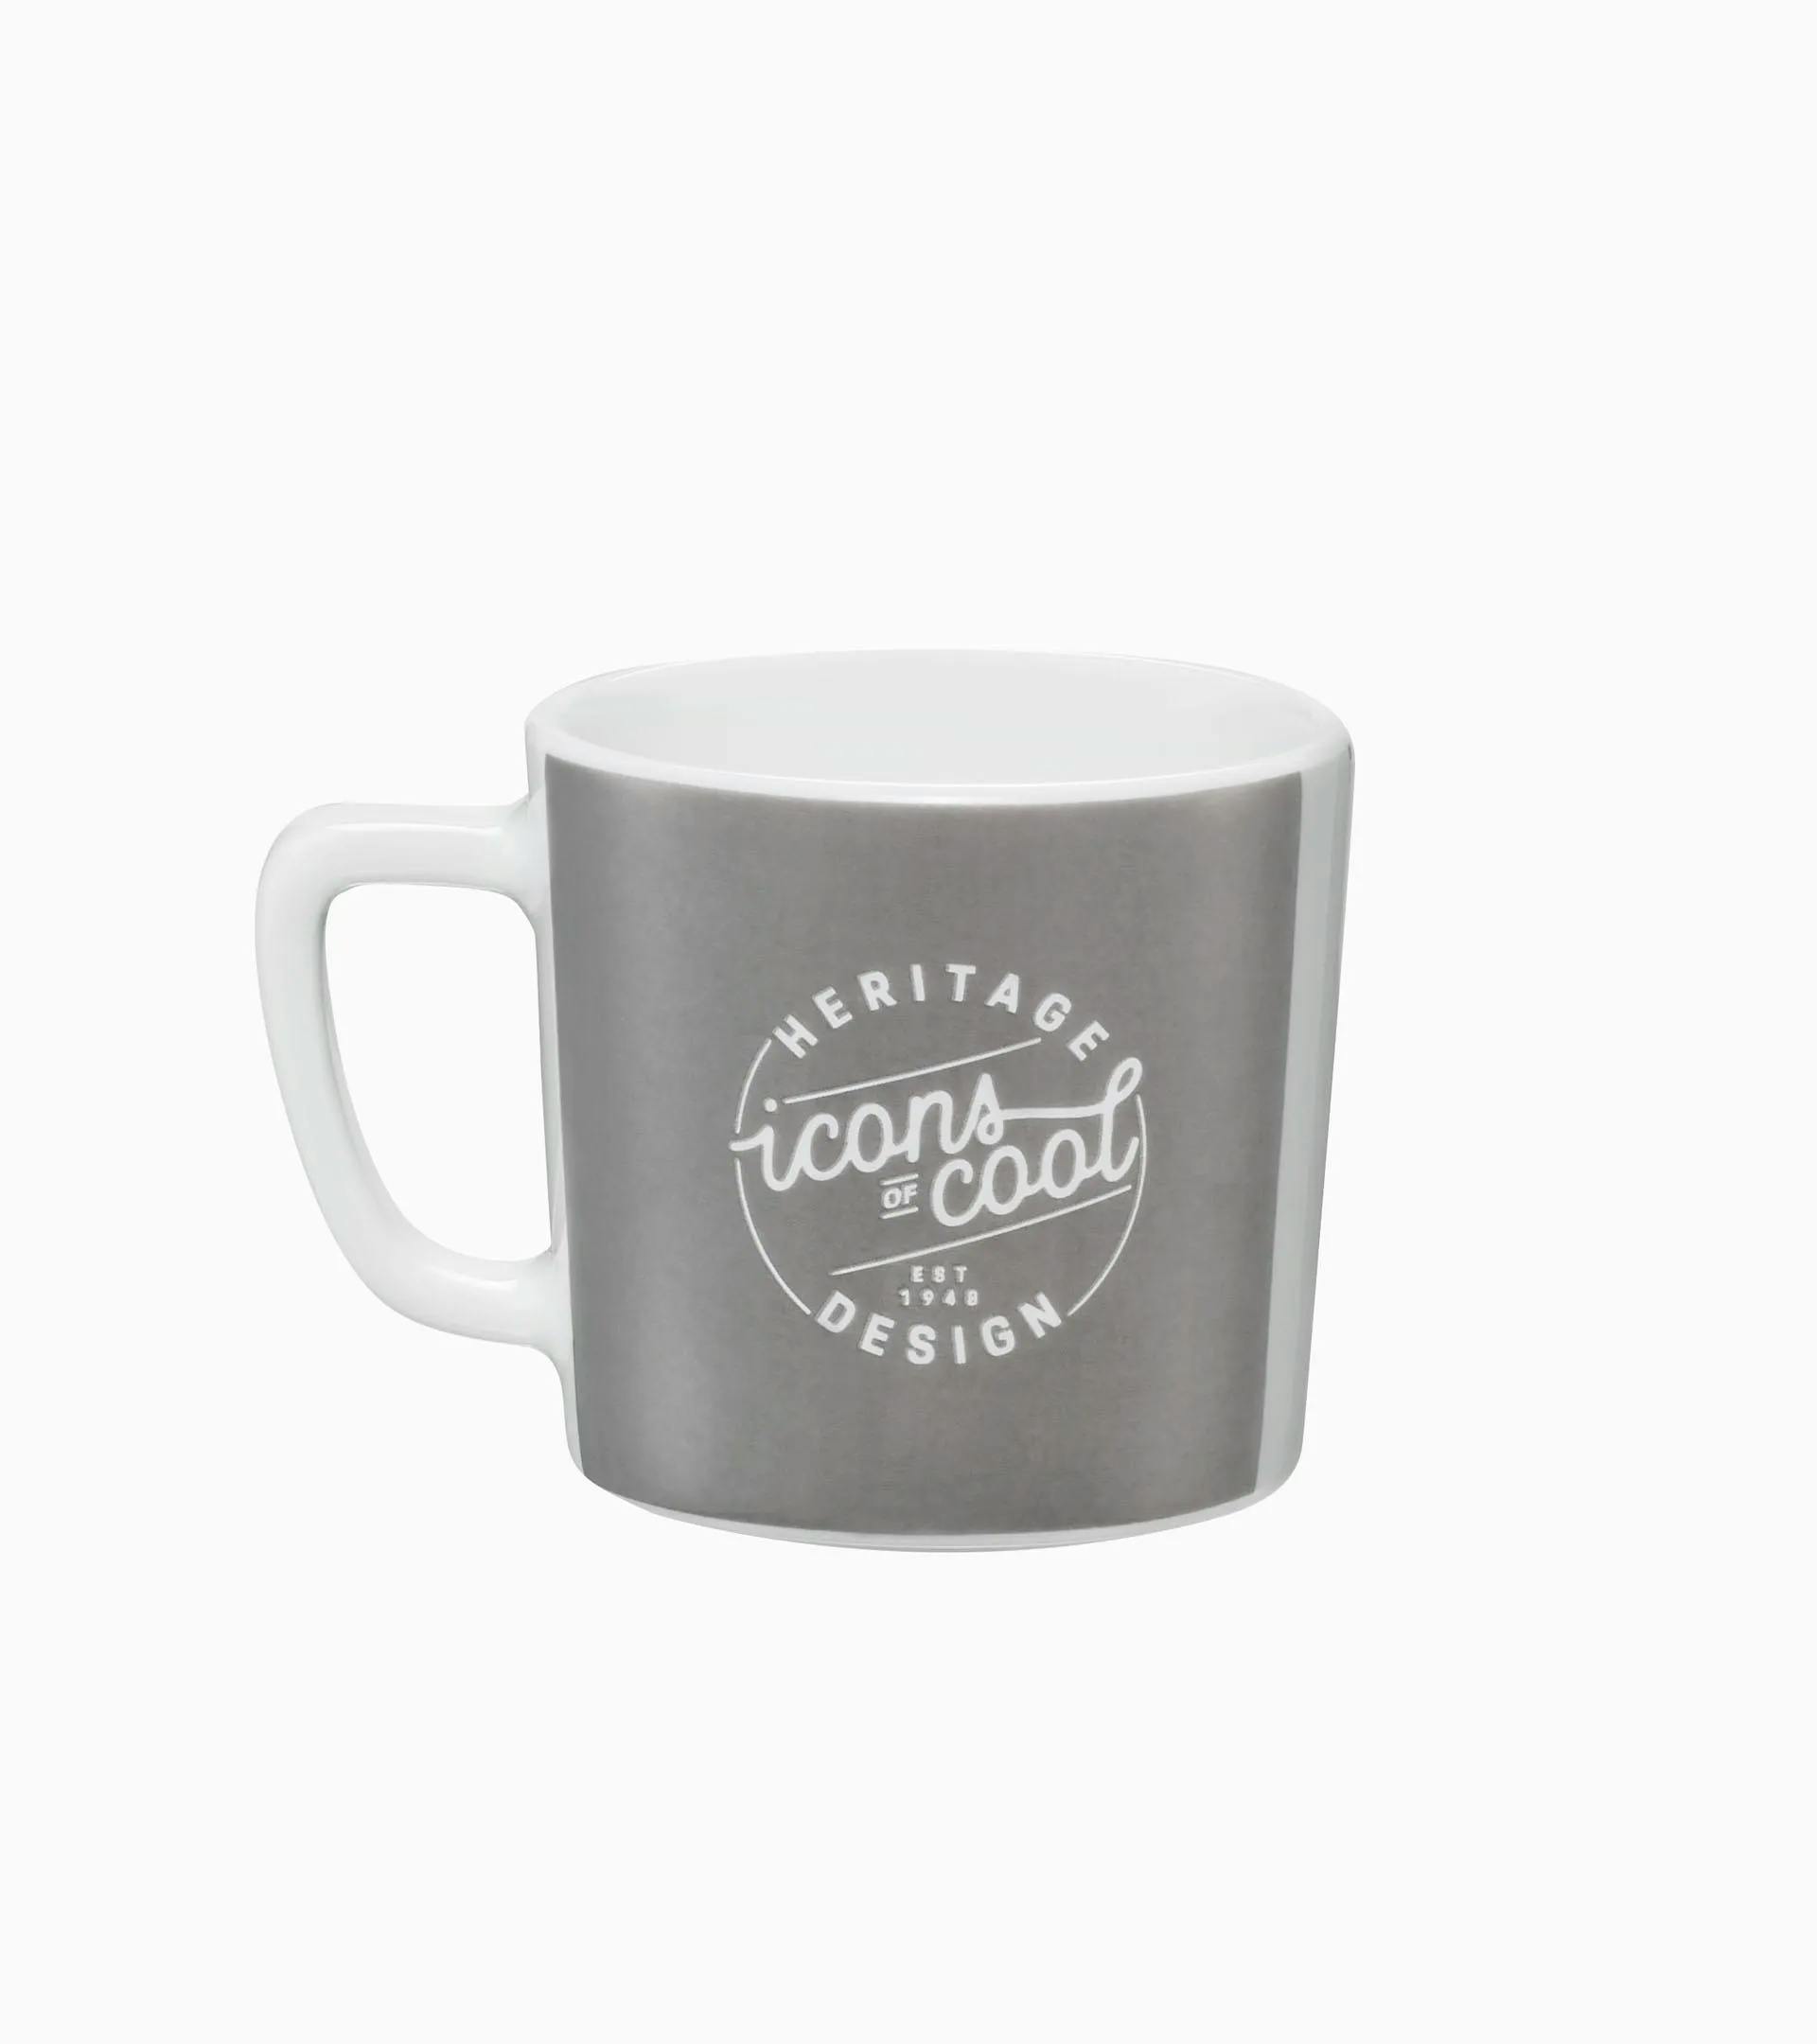 Collector's Espresso Cup nº 2 de la colección – Heritage Collection – Ltd. 2